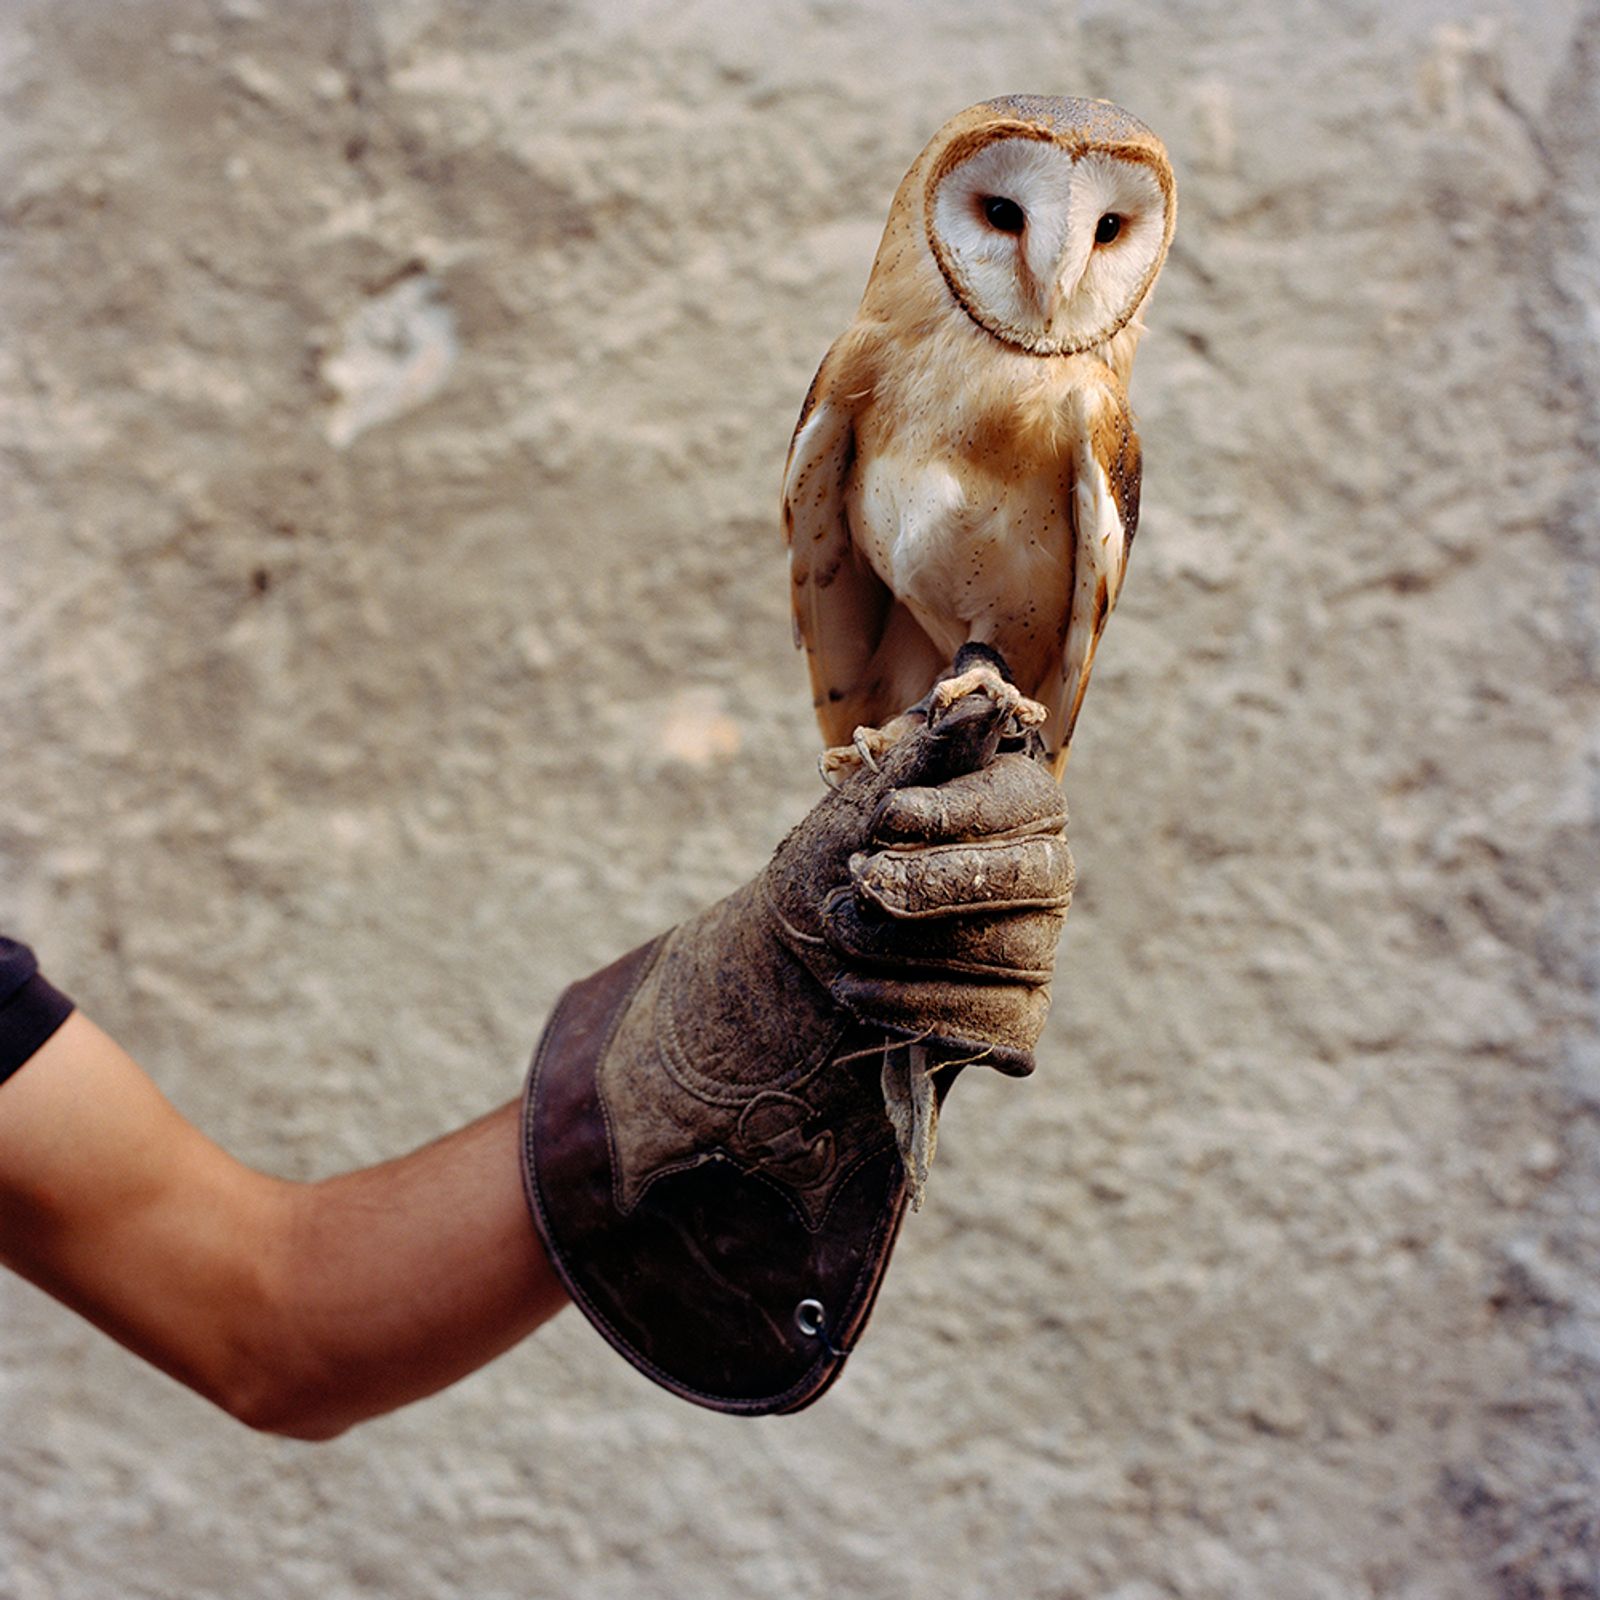 © Sandrine Lagnaz - La chouette effraie, fauconnerie de Saillon. The owl "effraie", Saillon's falconry.